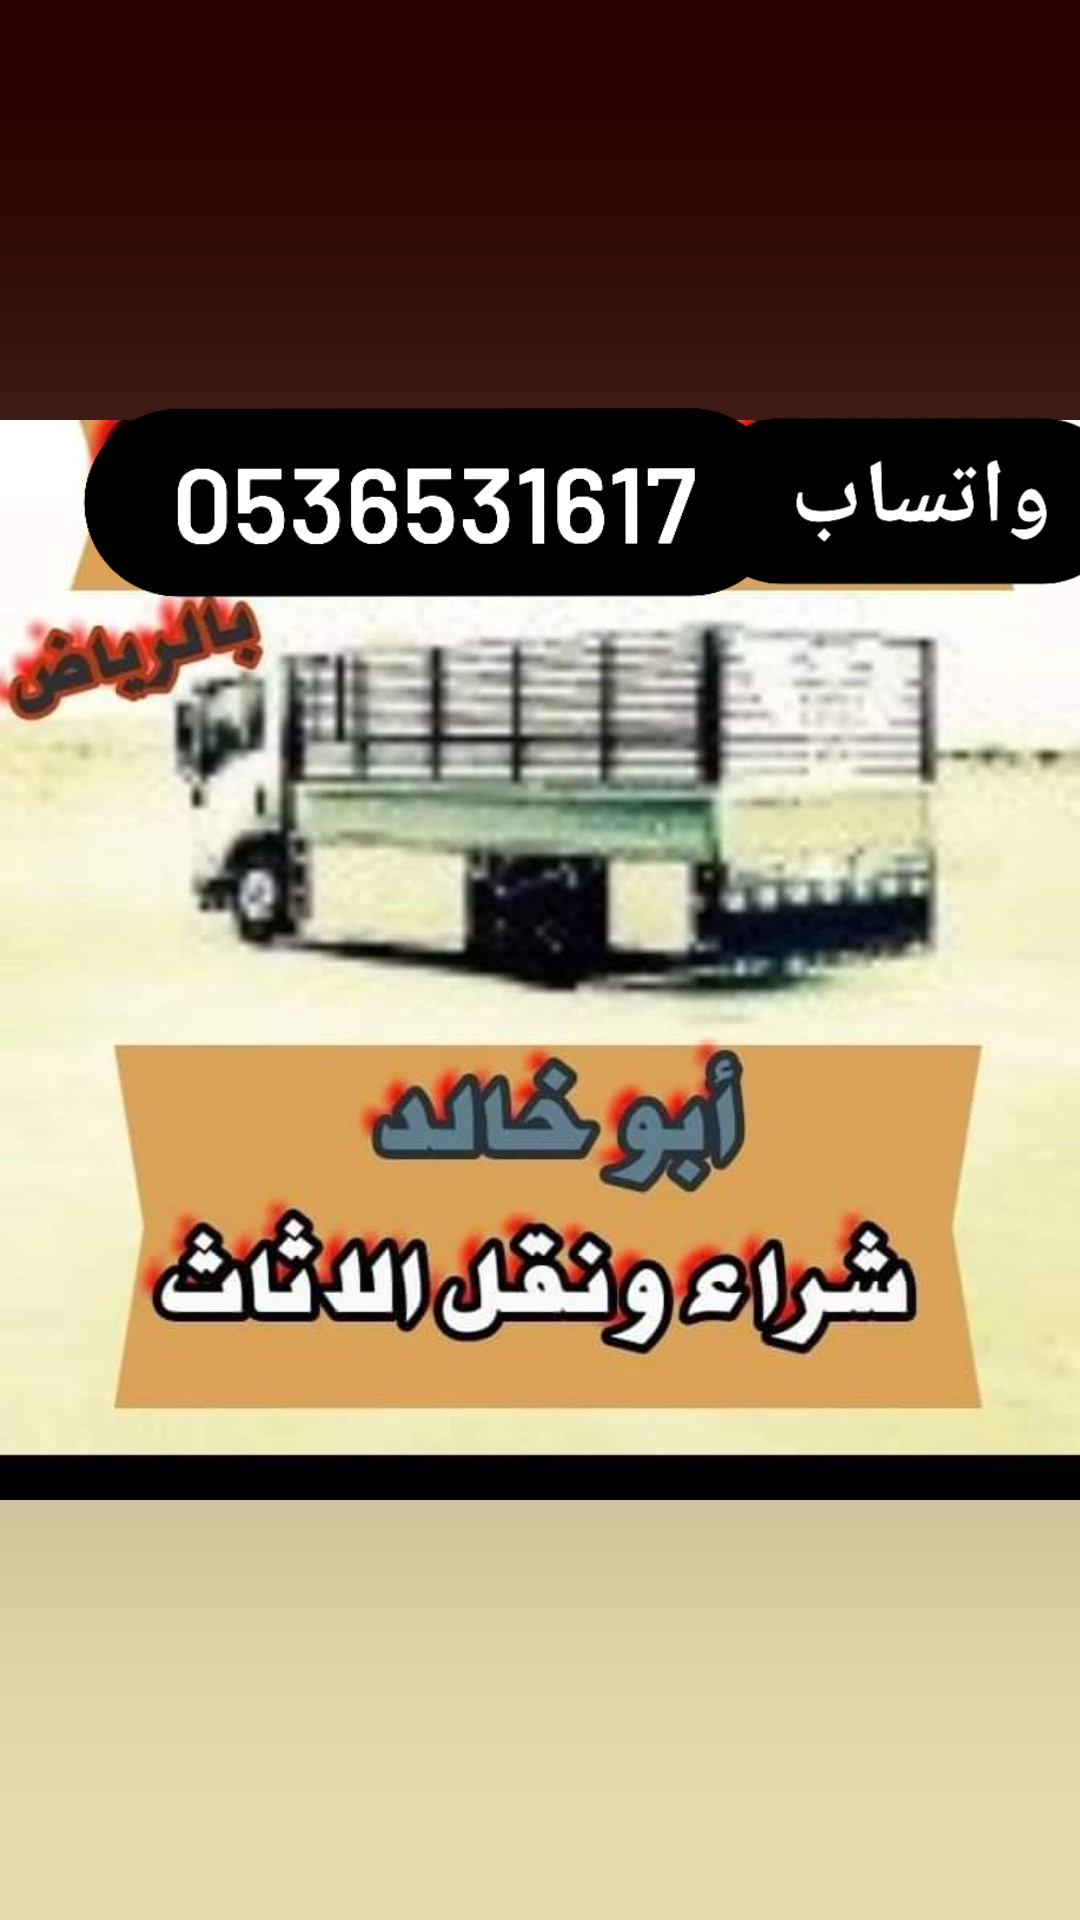 ,,نقل اثاث دينا حي القيروان جمعية الخيرية 0536531617نقل عفش بالرياض 